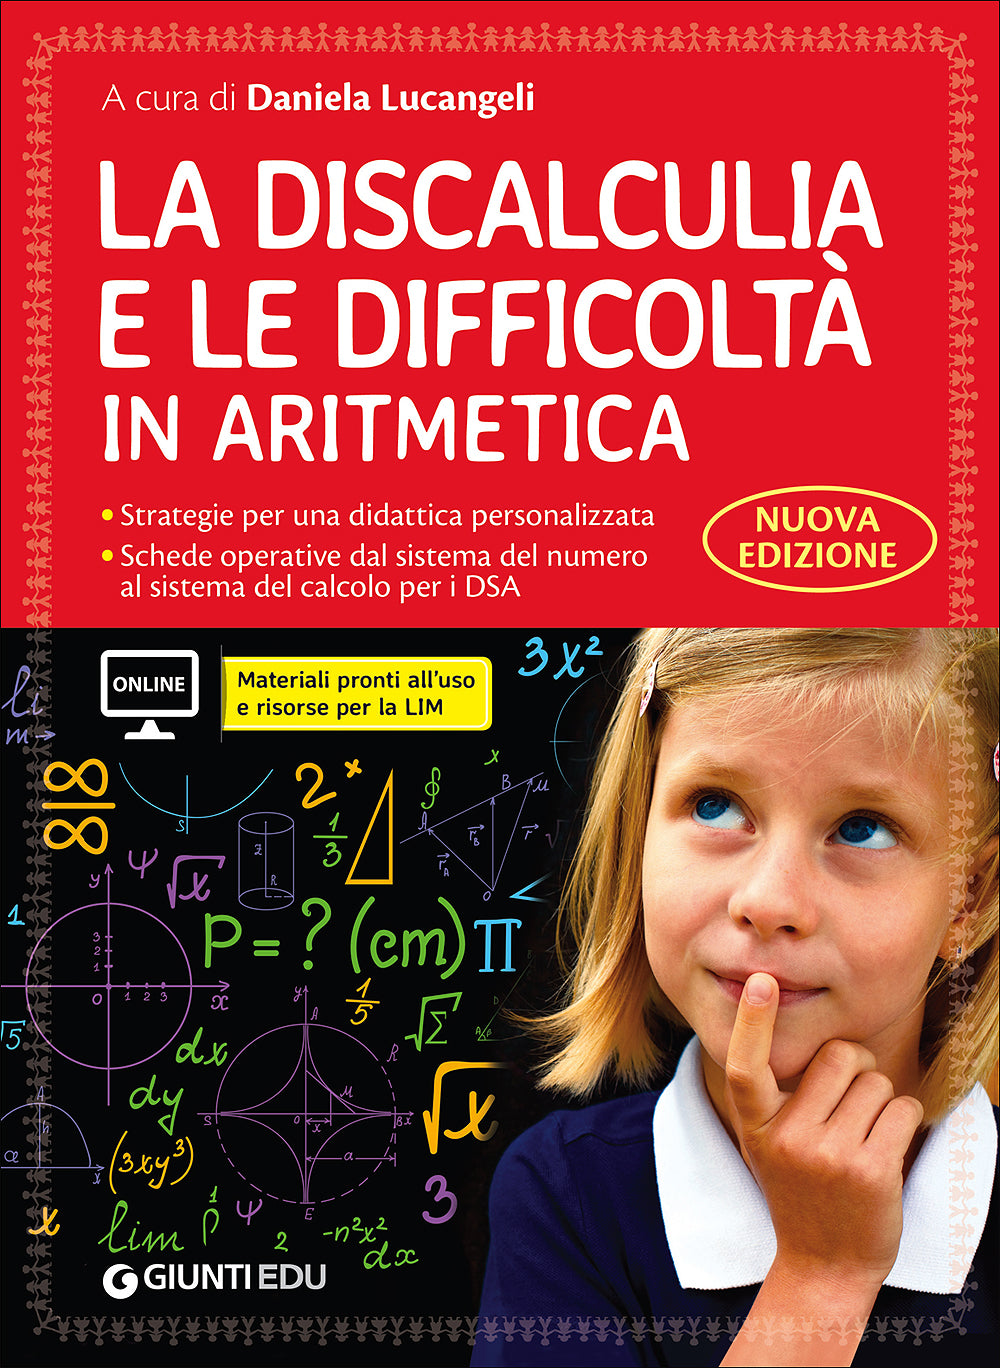 La discalculia e le difficoltà in aritmetica. Nuova edizione